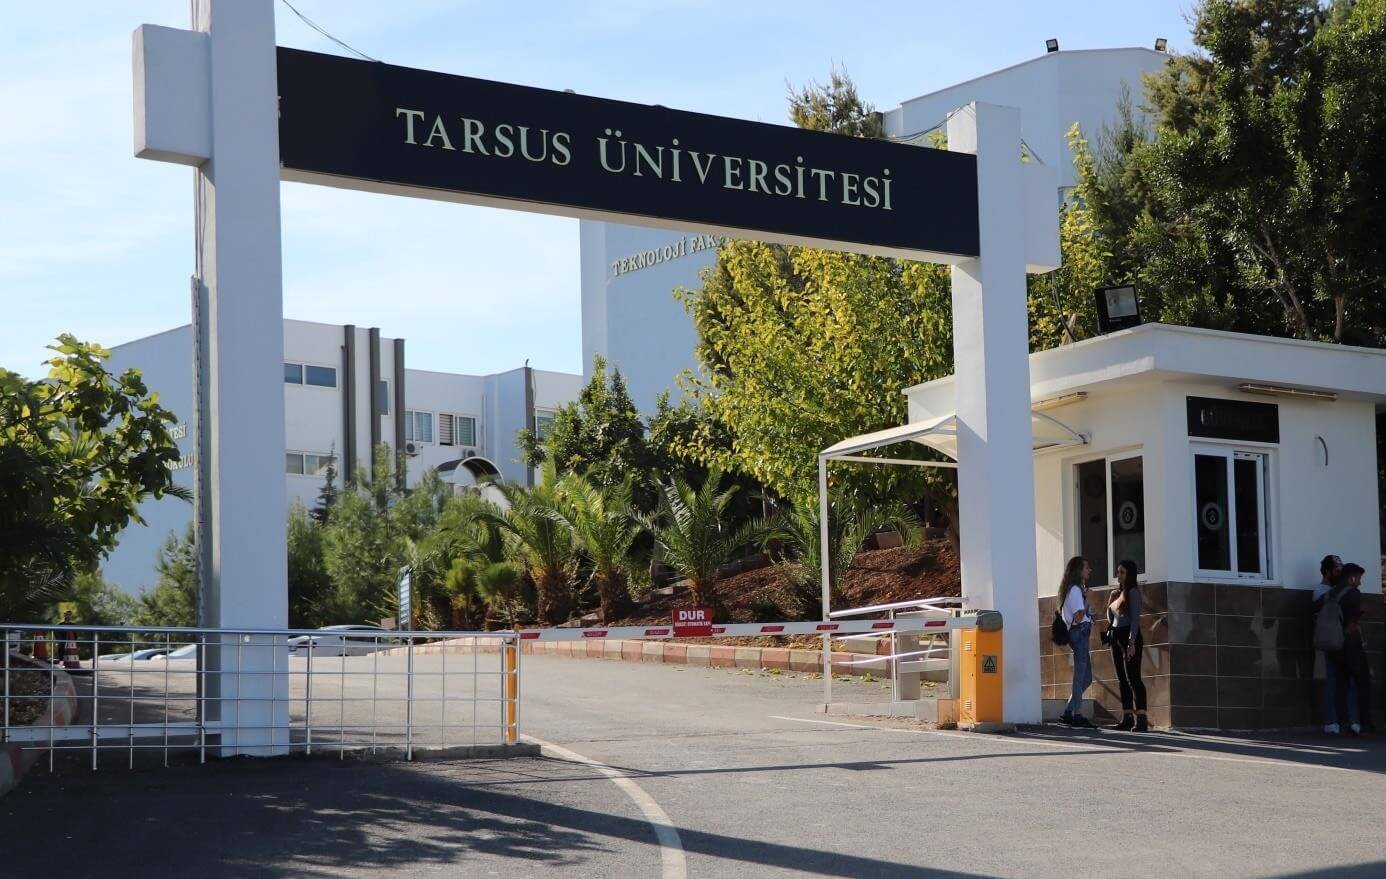 tarsus universitesi find and study 5 - Université de Tarse